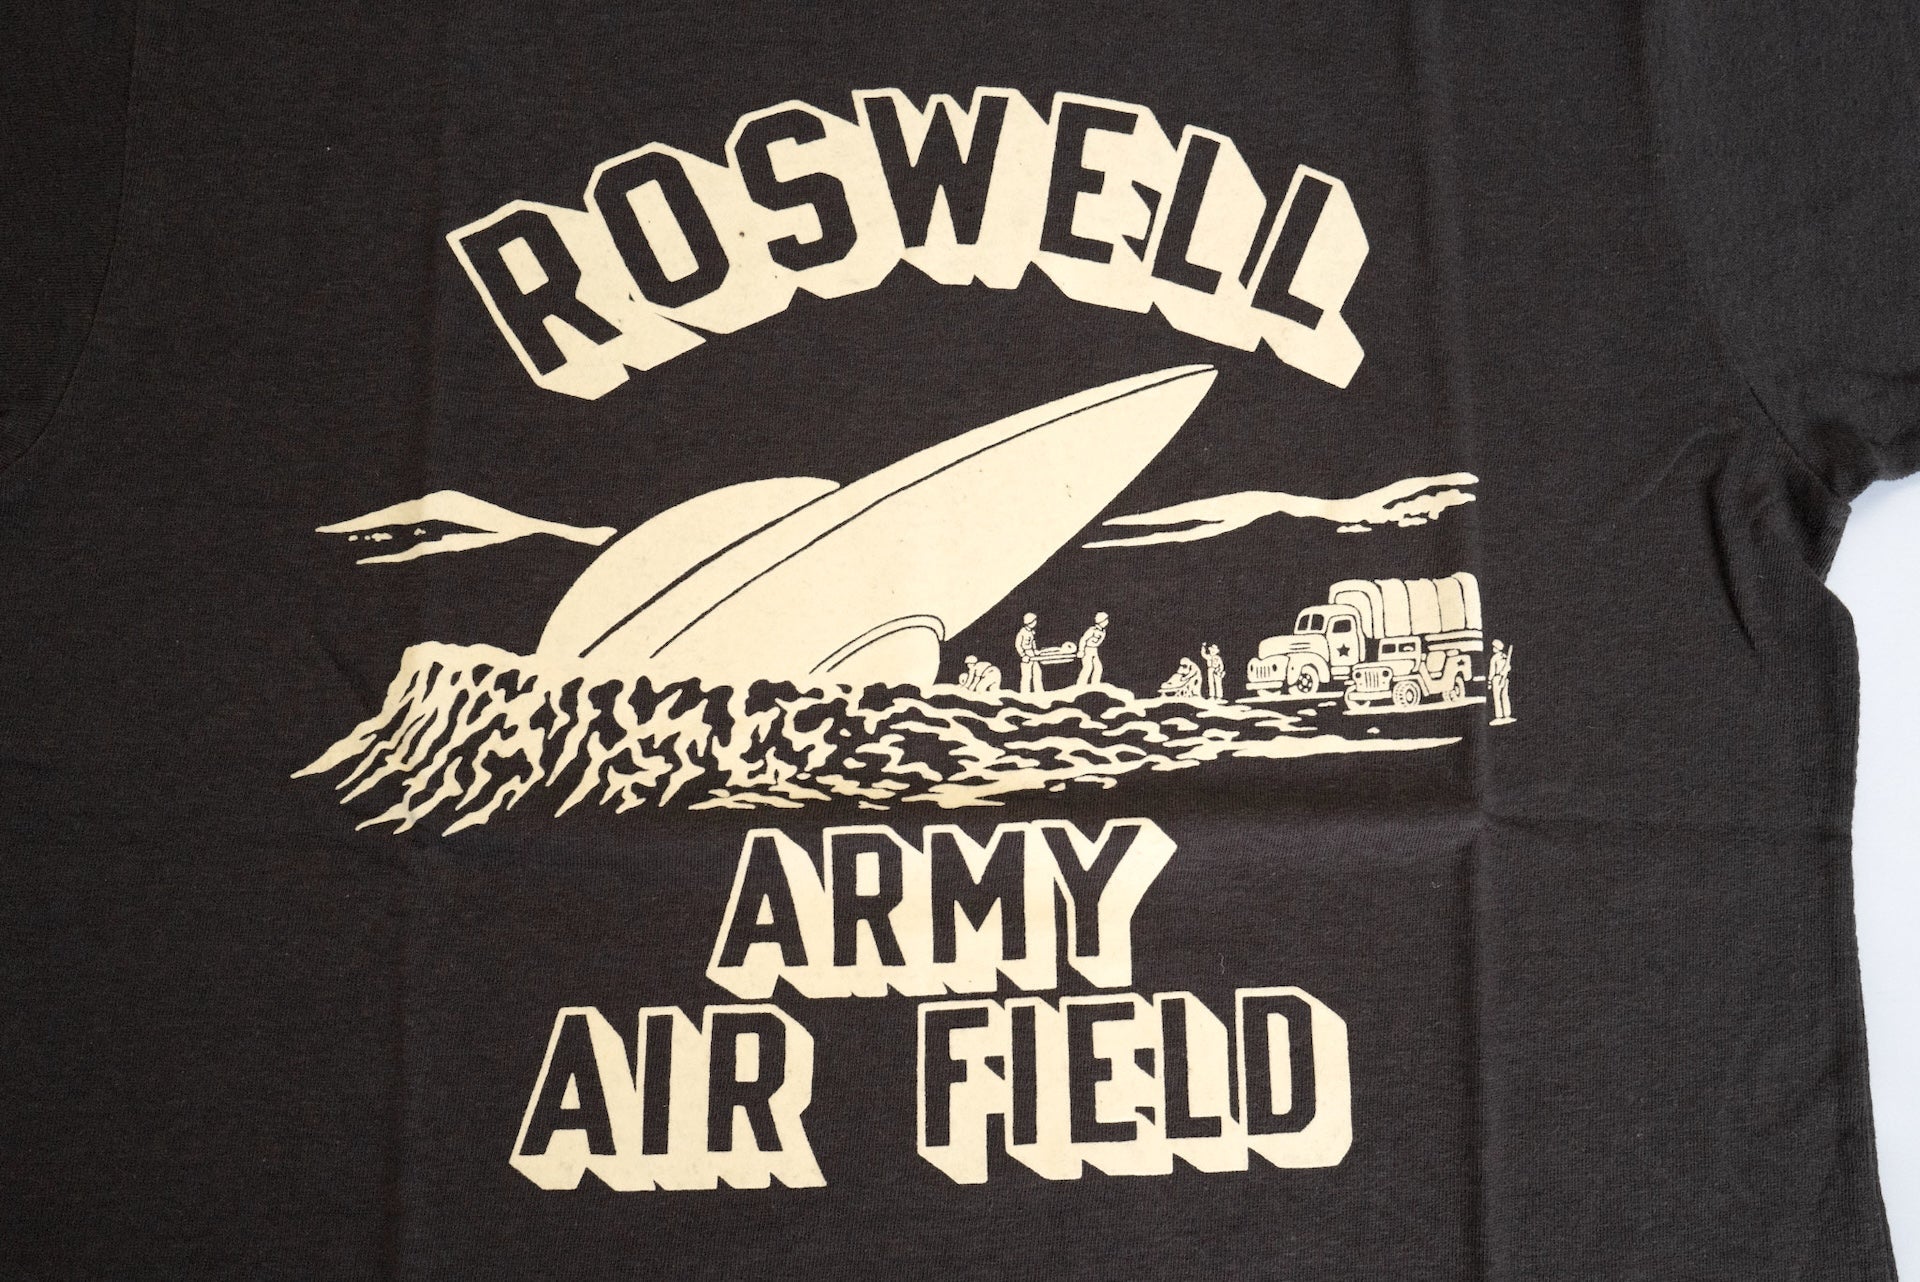 Freewheelers "Roswell AFF UFO" Loopwheeled Tee (Jet Black)